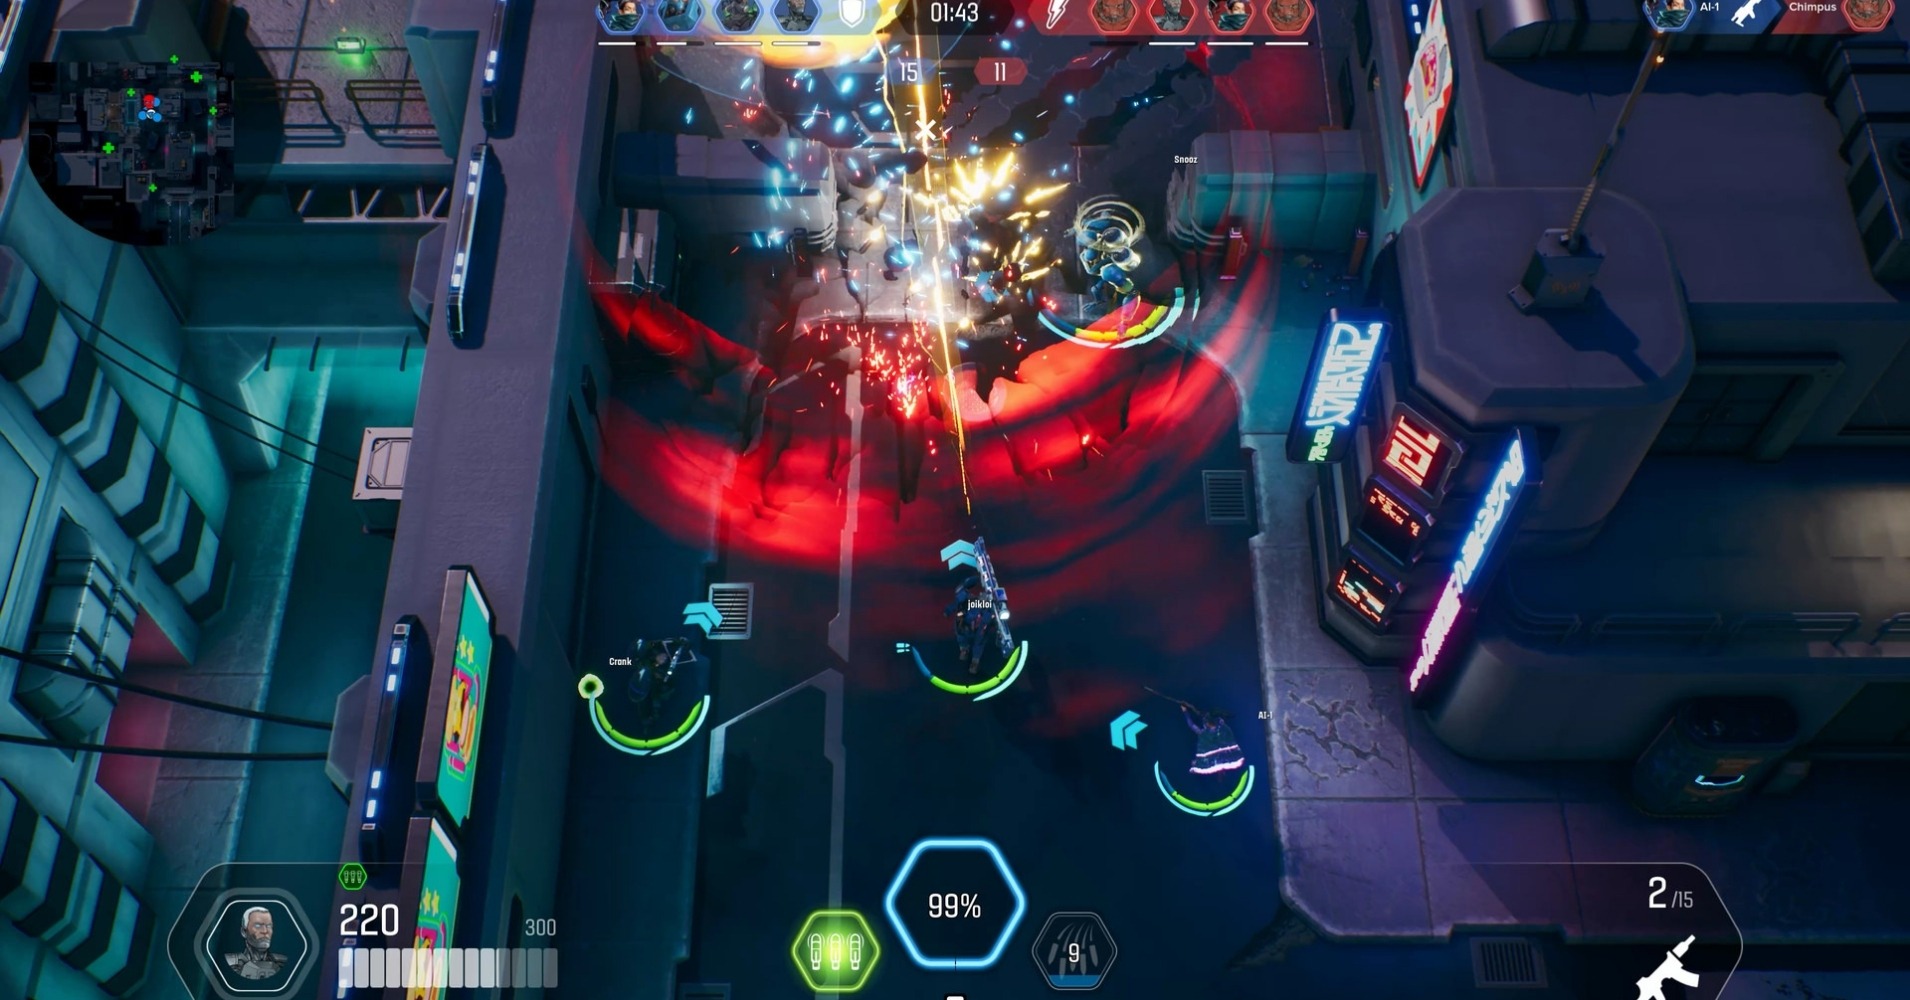 The Machines Arena gameplay